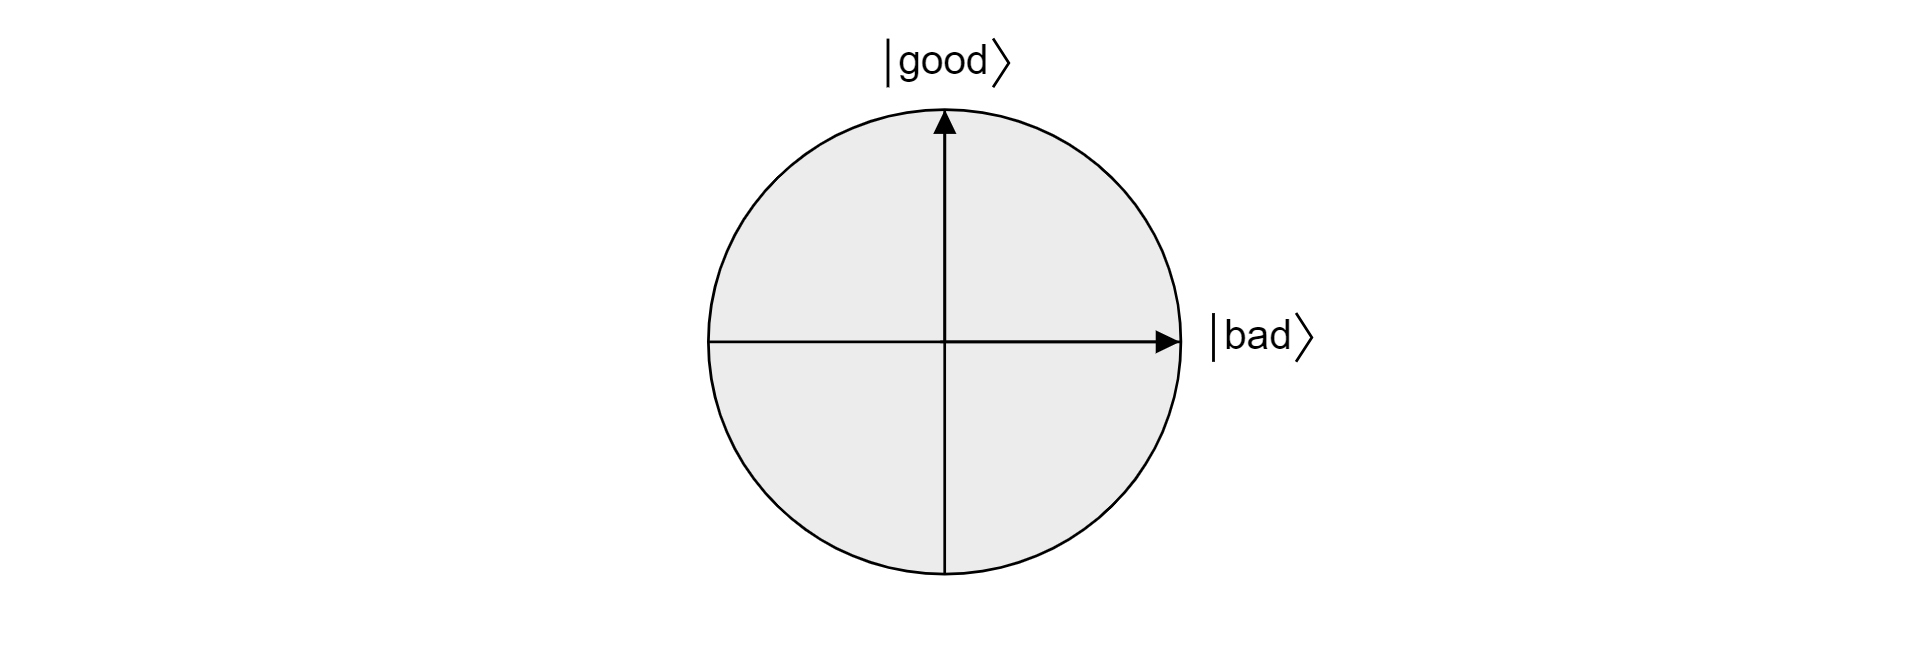 Plot van het vlak in de Bloch bol geprojecteerd door de orthogonale goede en slechte vectoren.